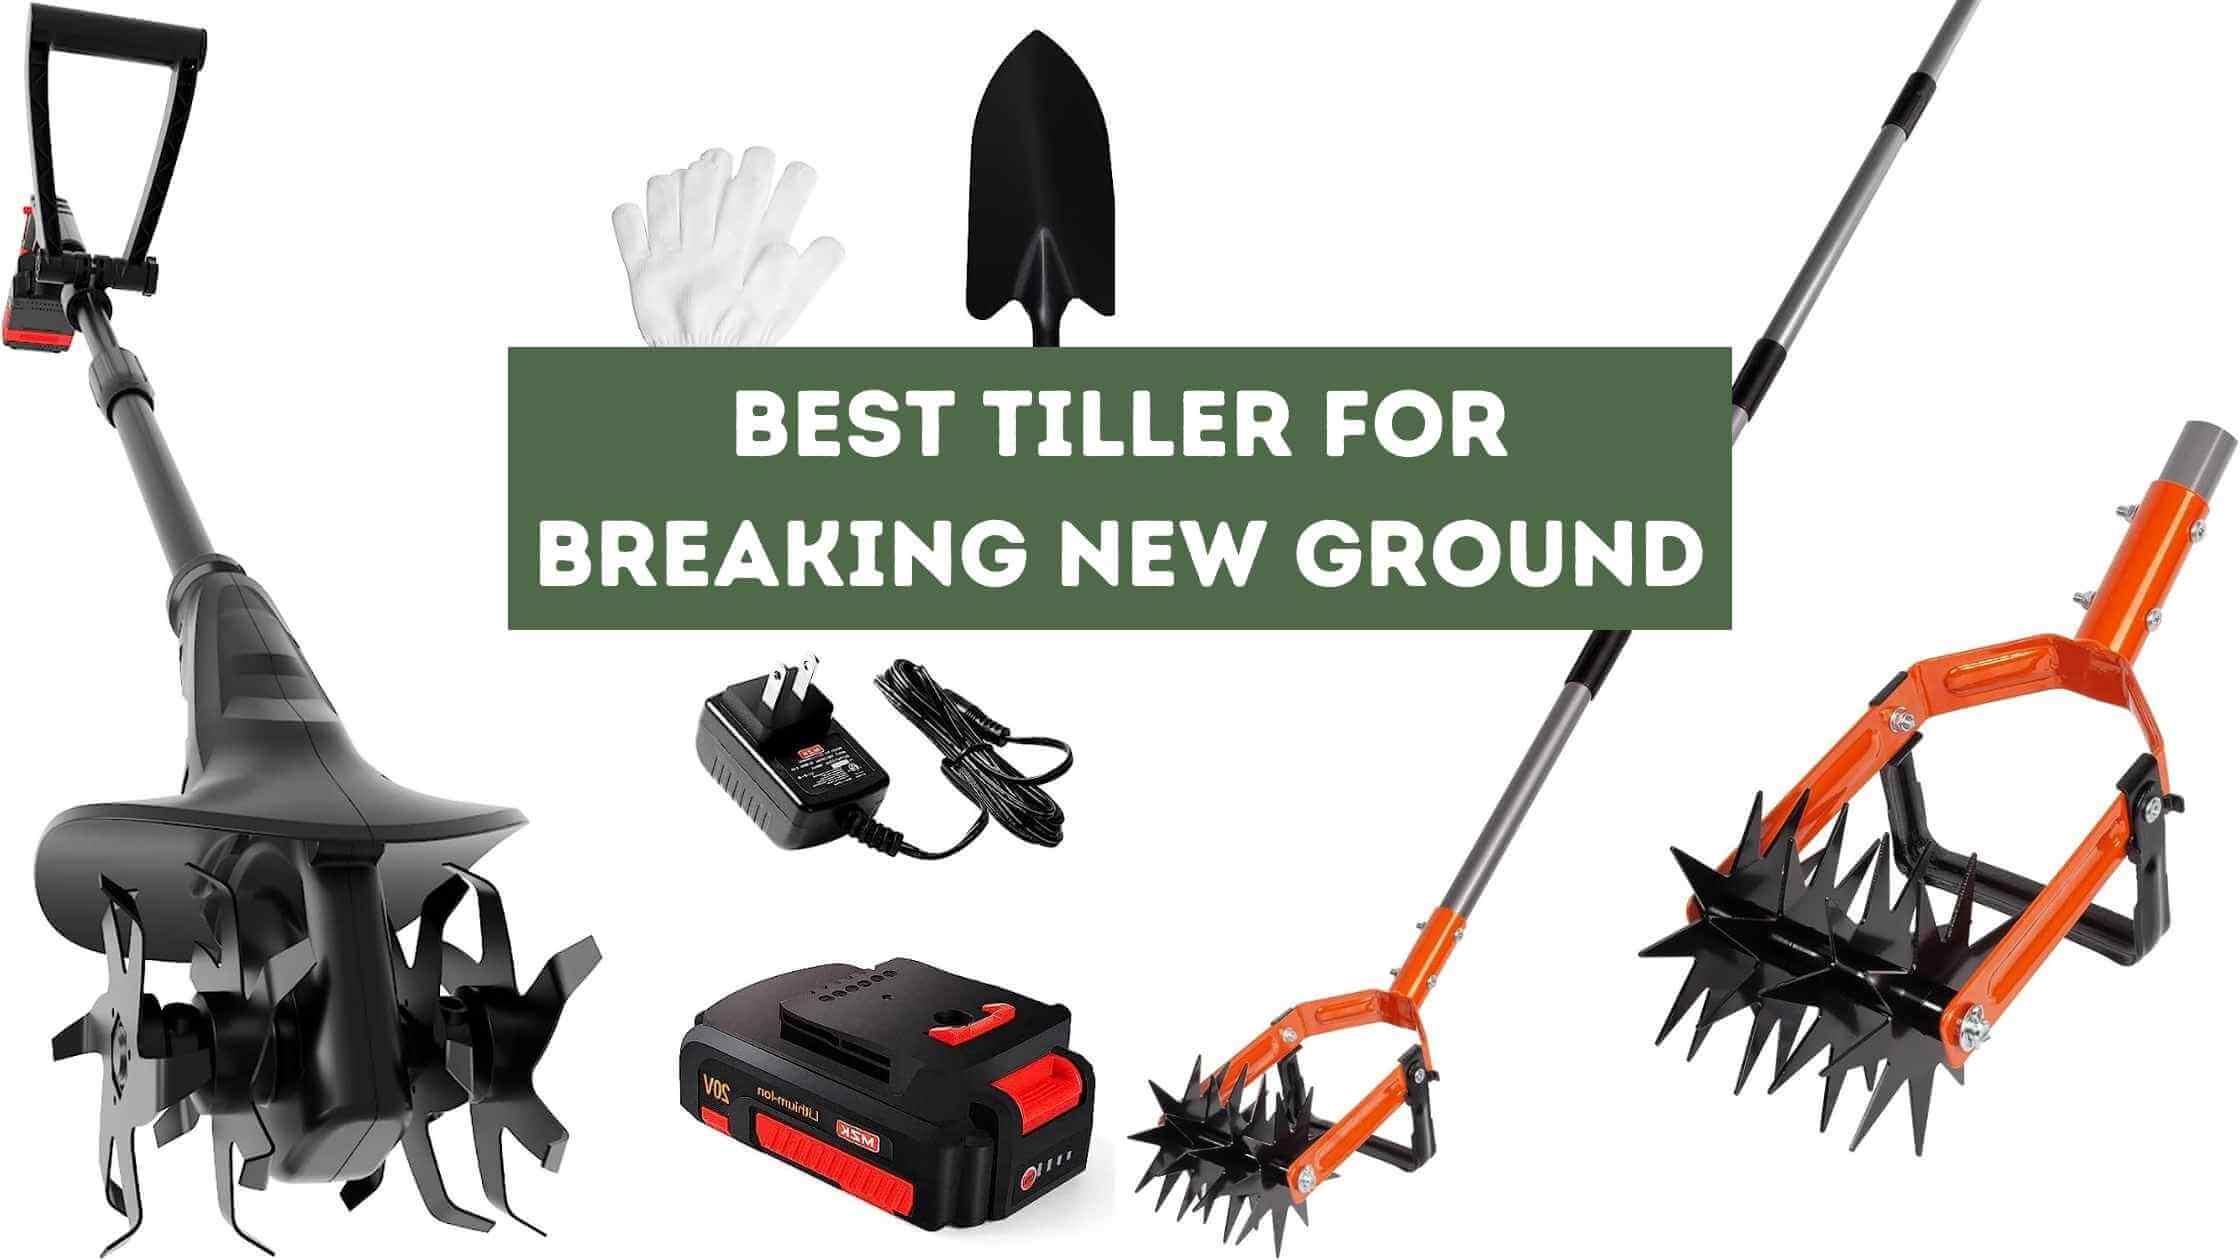 Best Tiller for Breaking New Ground